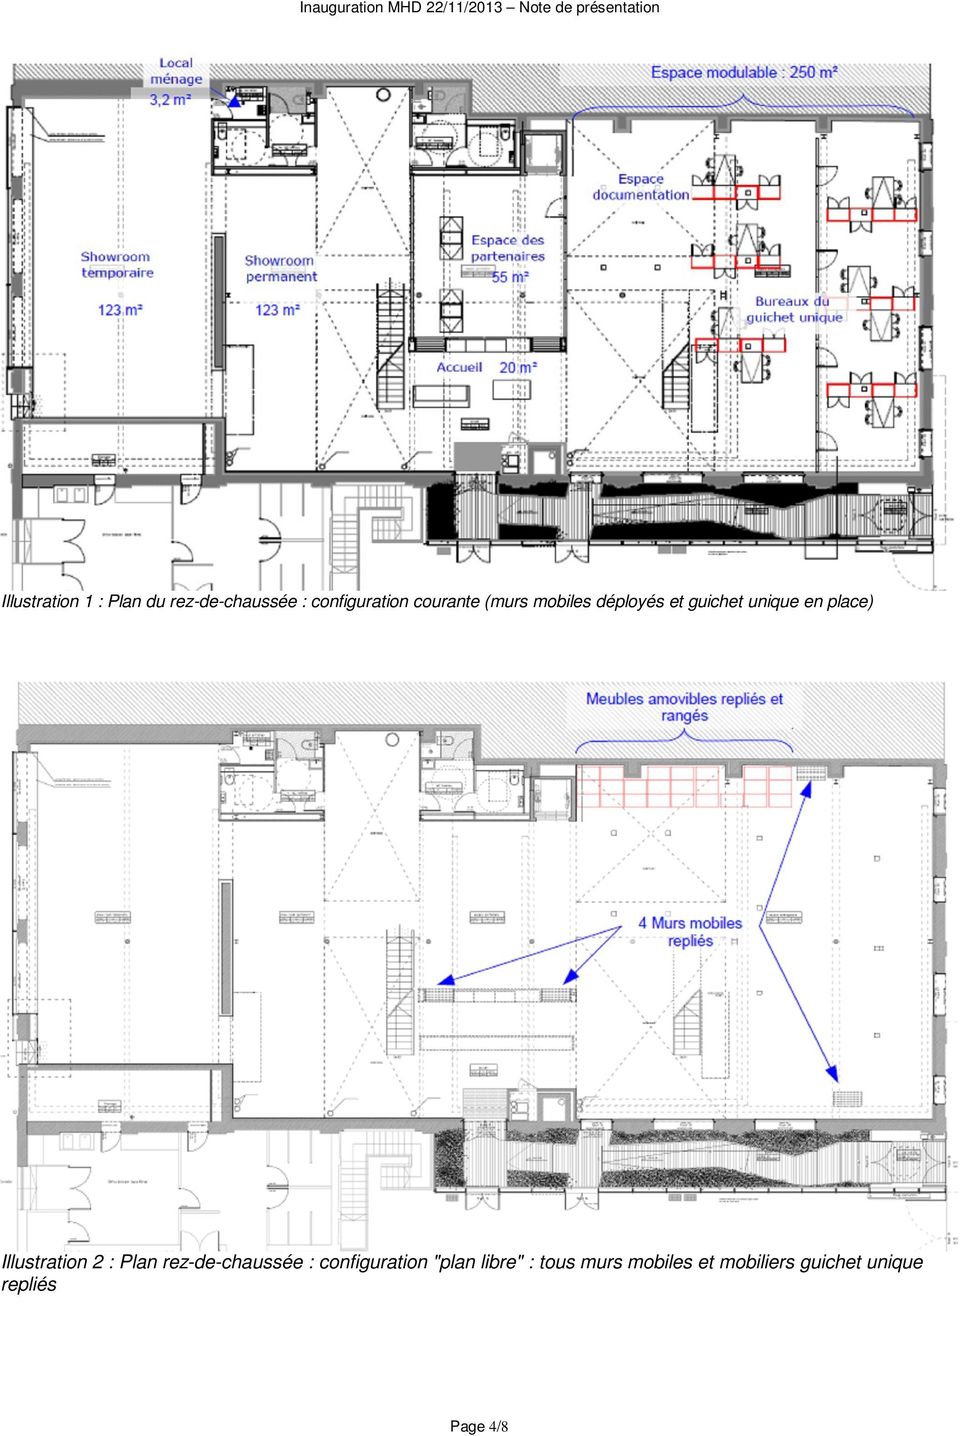 Illustration 2 : Plan rez-de-chaussée : configuration "plan